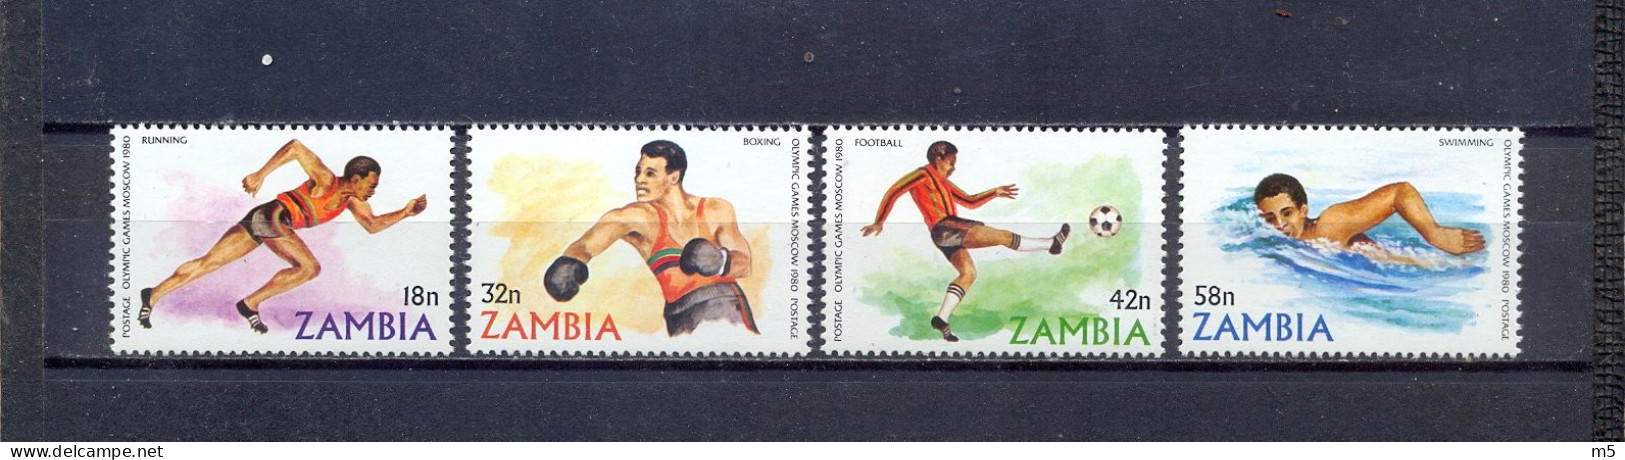 ZAMBIA - MNH - OLYMPIC GAMES 1980. - MI.NO.225/8 - CV = 2,4 € - Sommer 1980: Moskau